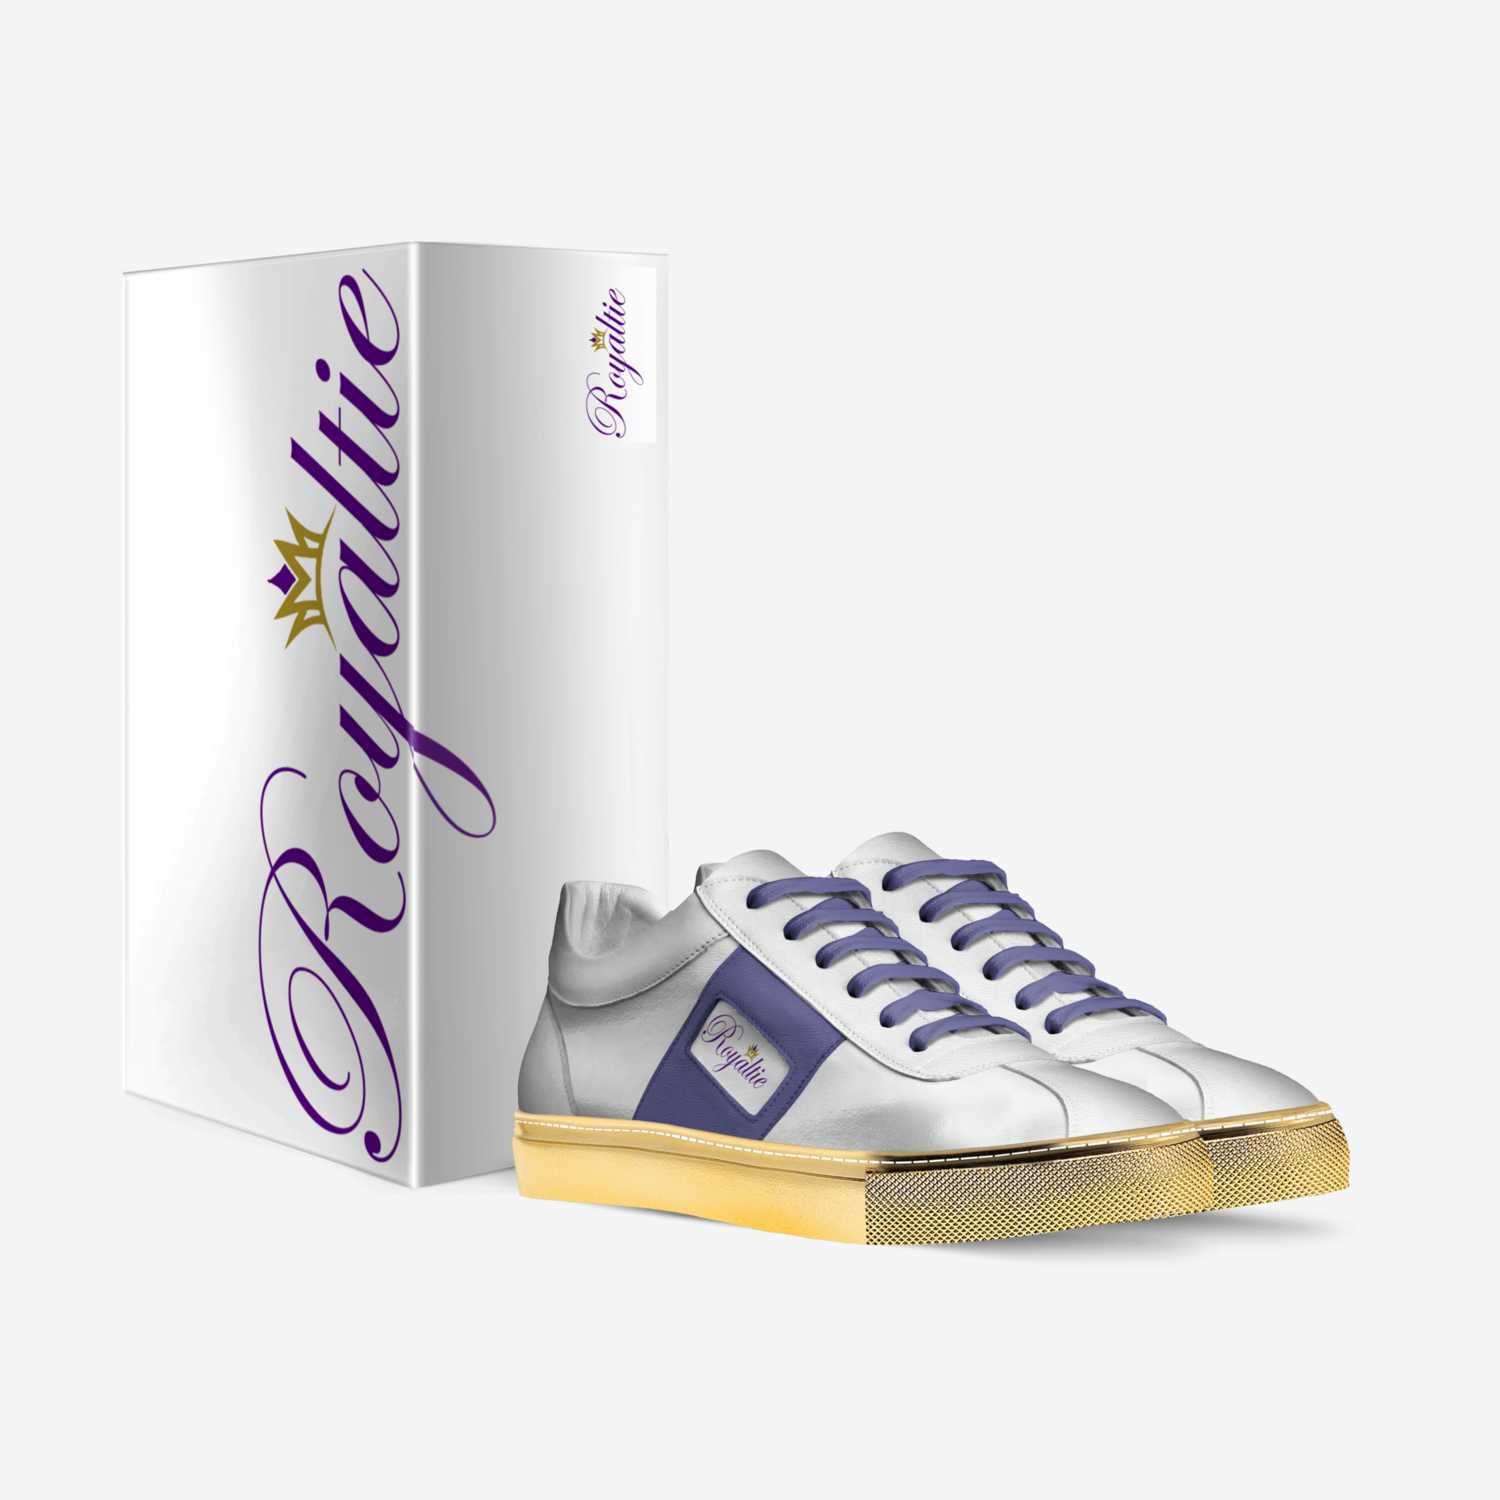 Royaltie custom made in Italy shoes by Markisha Eddington | Box view